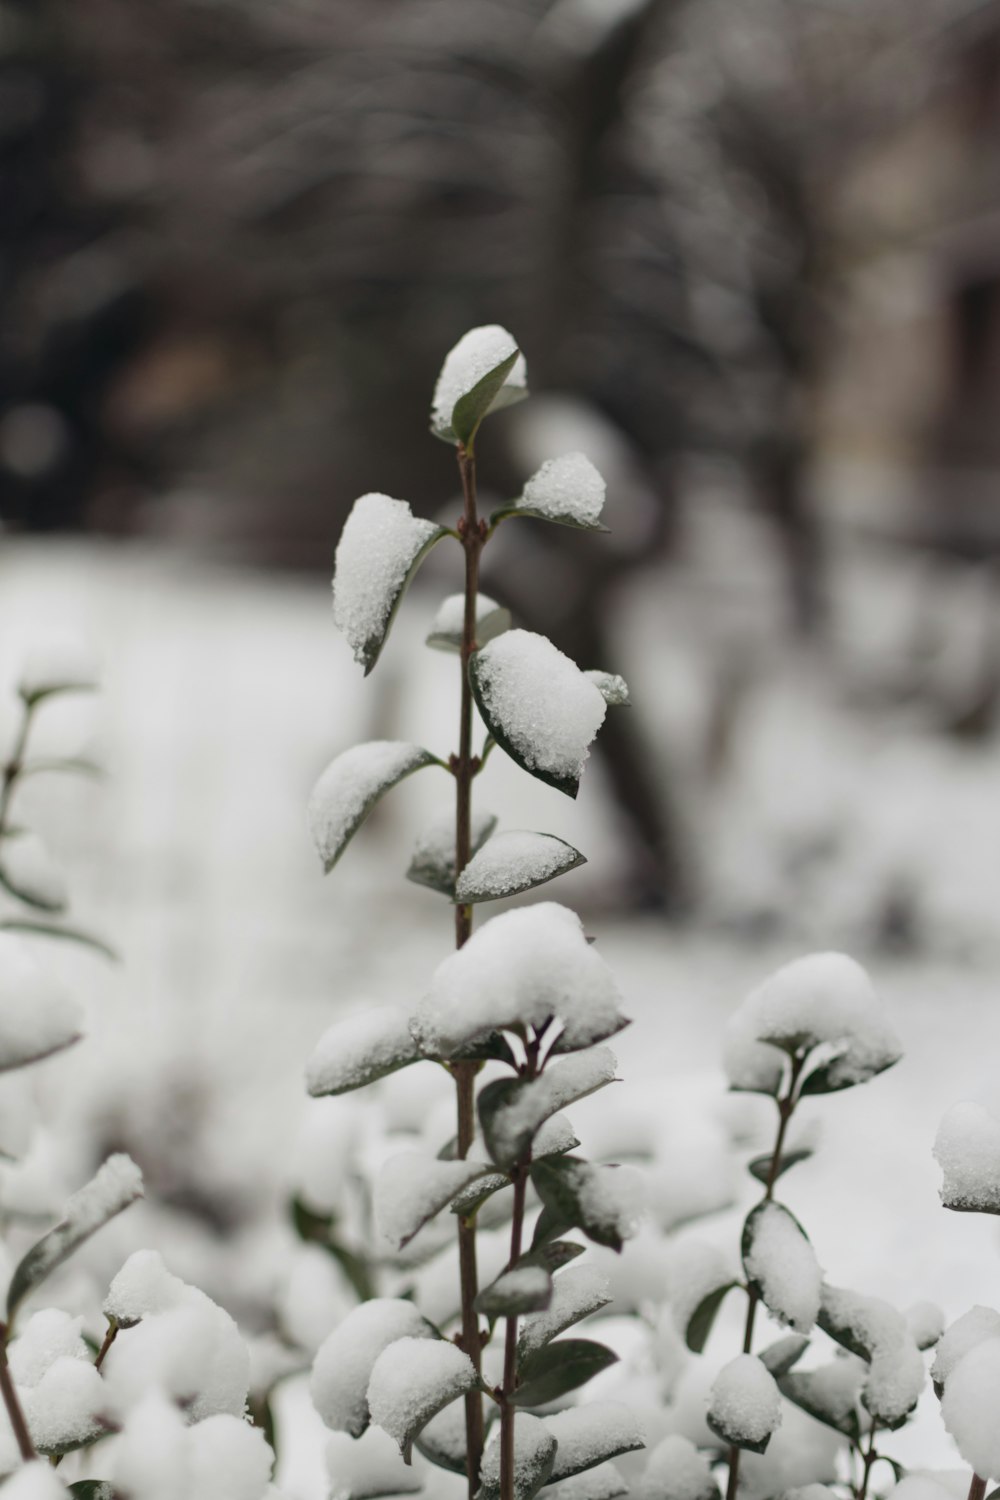 pianta a foglia verde coperta di neve nella fotografia a fuoco selettivo